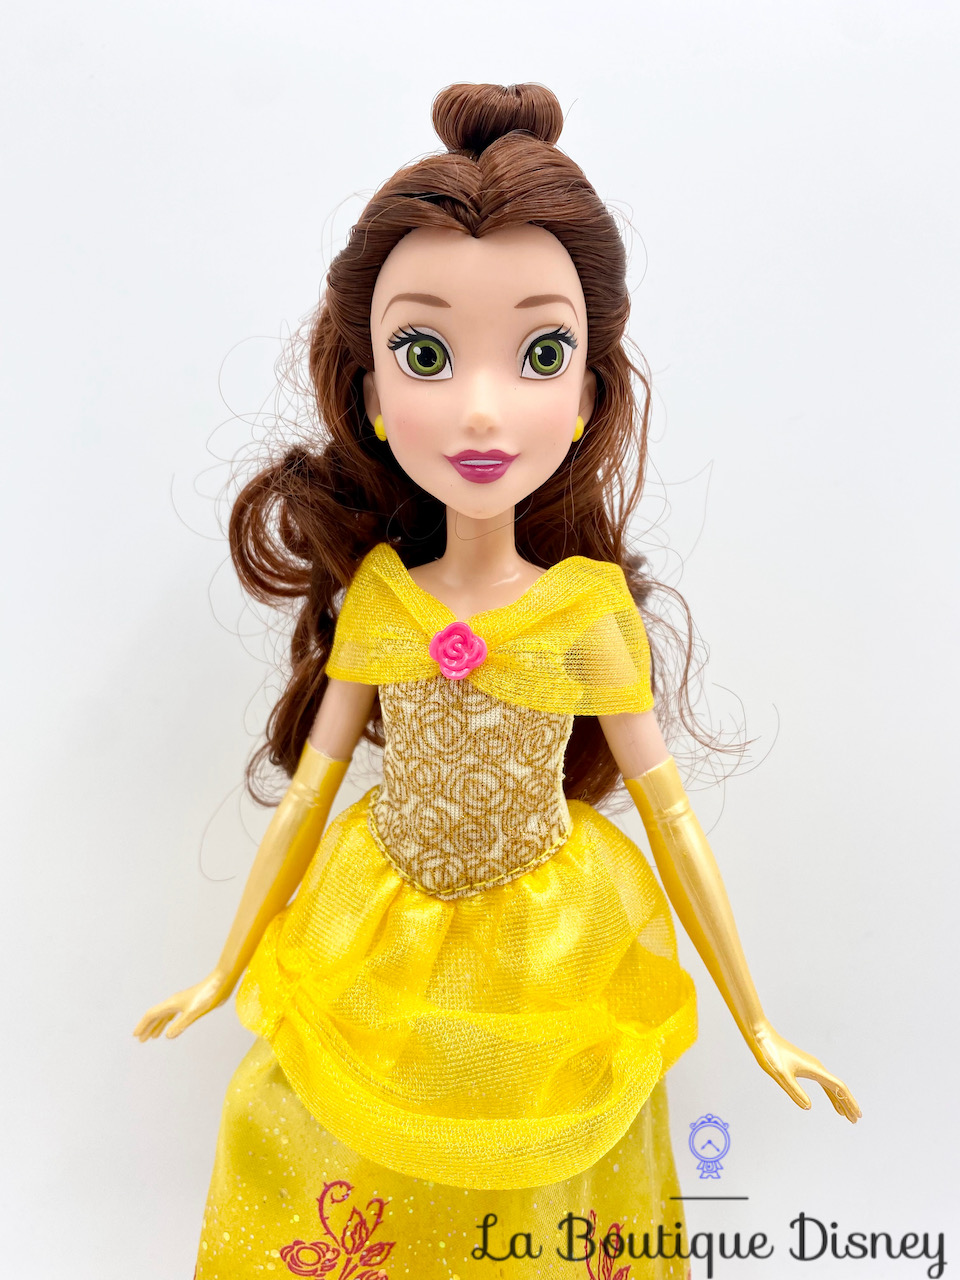 Poupée Elsa Poussière d'étoiles La reine des neiges Hasbro Disney 2015  mannequin robe bleu 30 cm